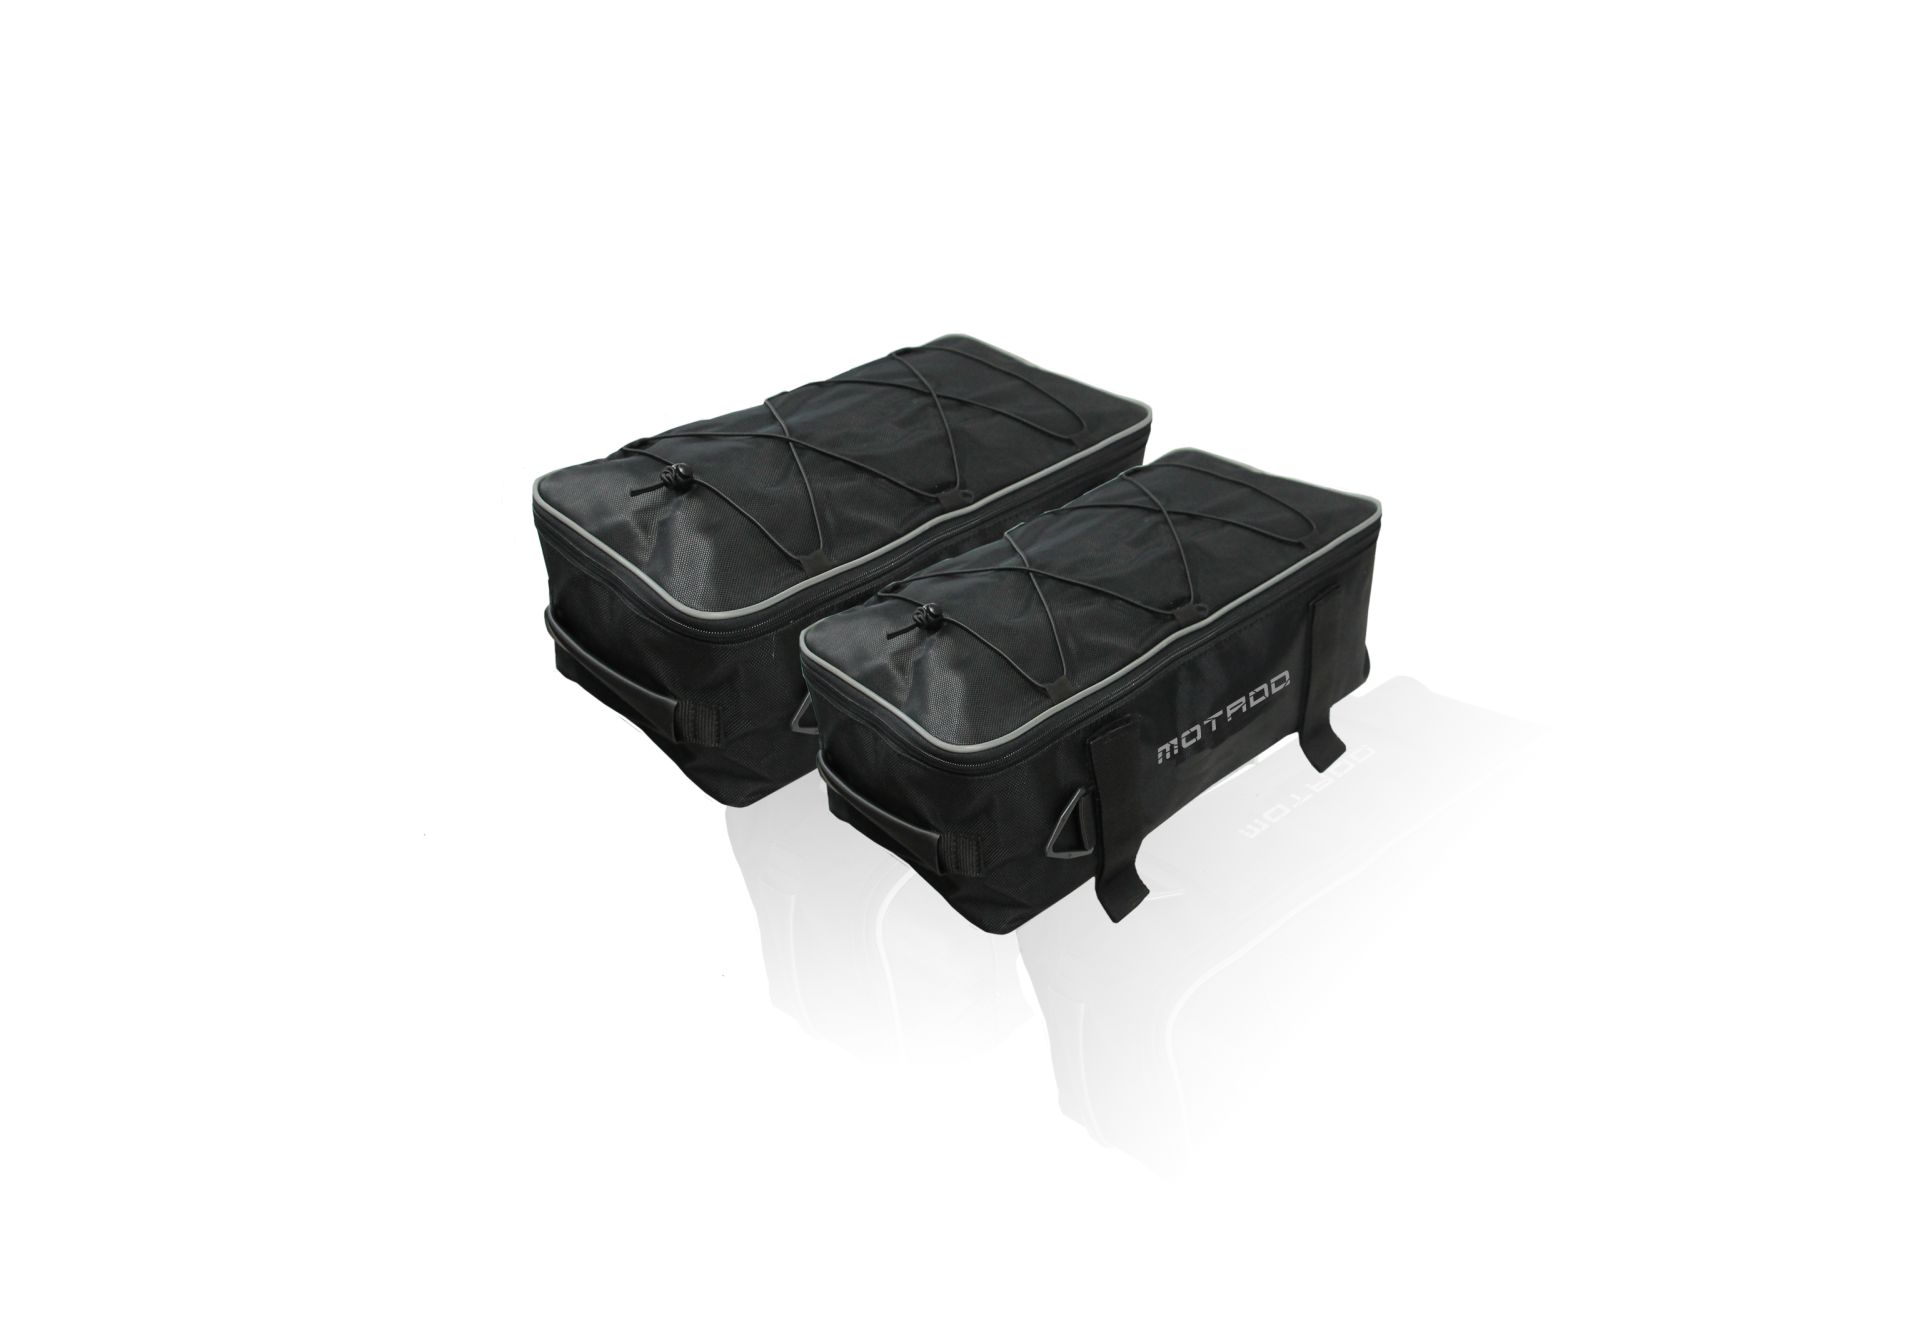 Coppia borse esterne per valigie alluminio compatibile con R 1200/1250 GS  ADV/ADV LC - R1300 GS - F 800 GS ADV impermeabile